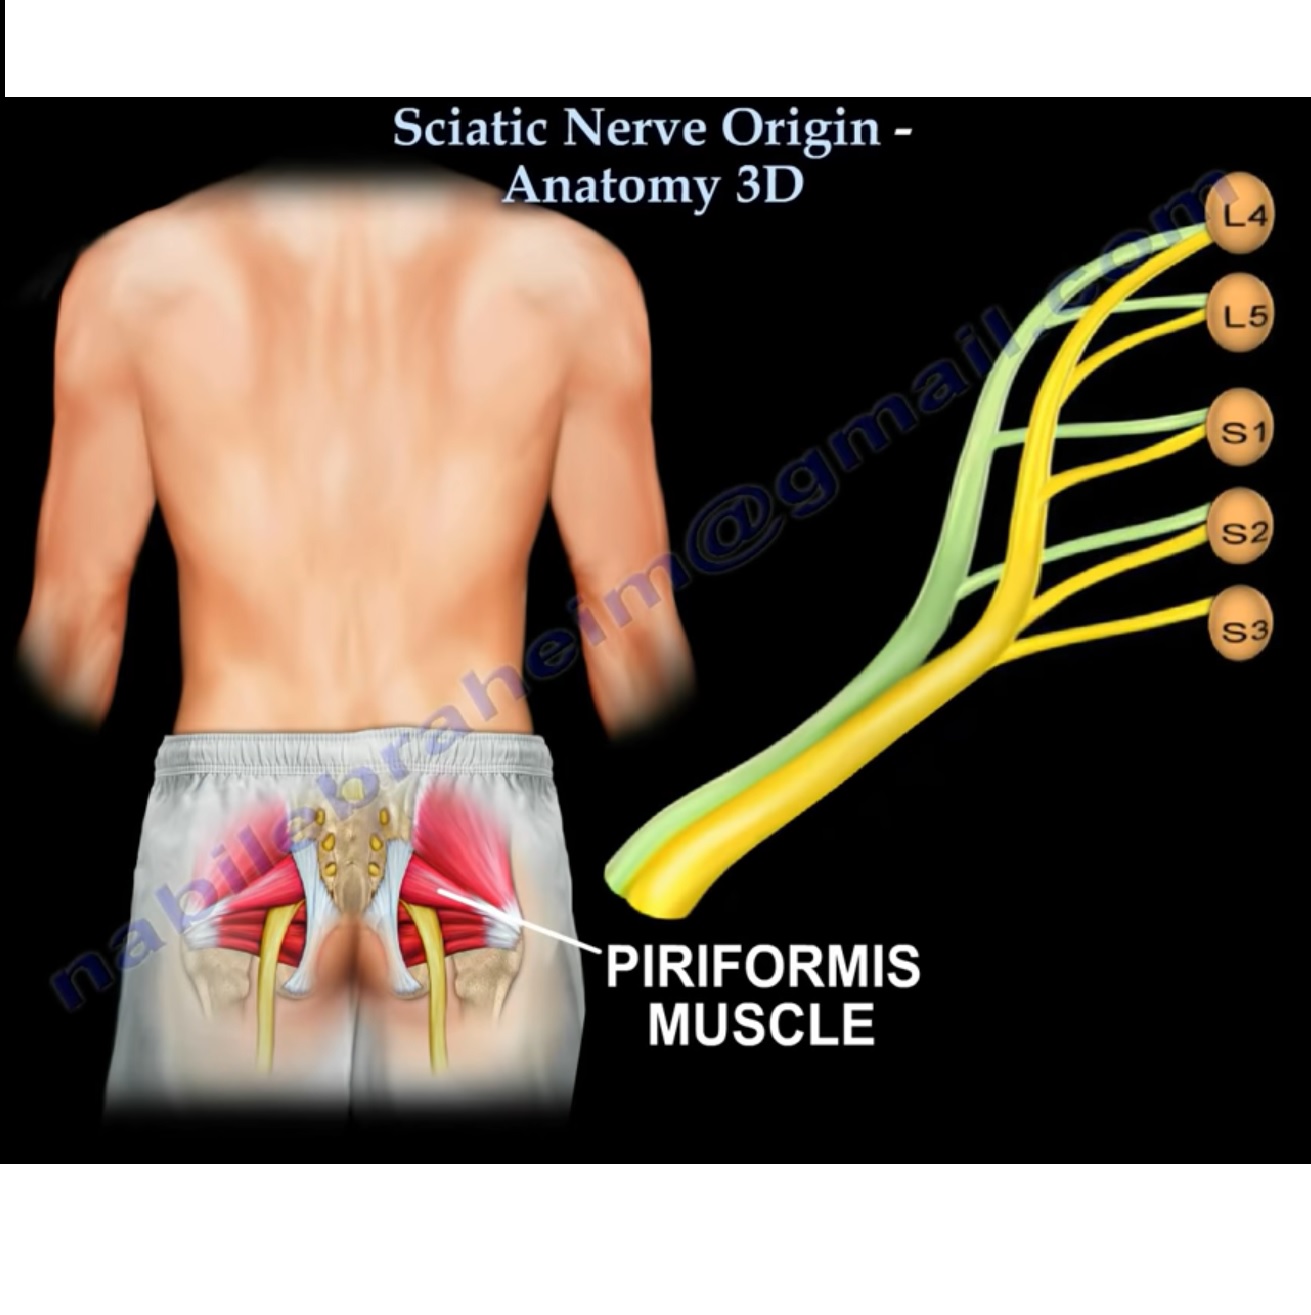 https://orthopaedicprinciples.com/wp-content/uploads/2013/10/Sciatic-Nerve-Origin.jpg